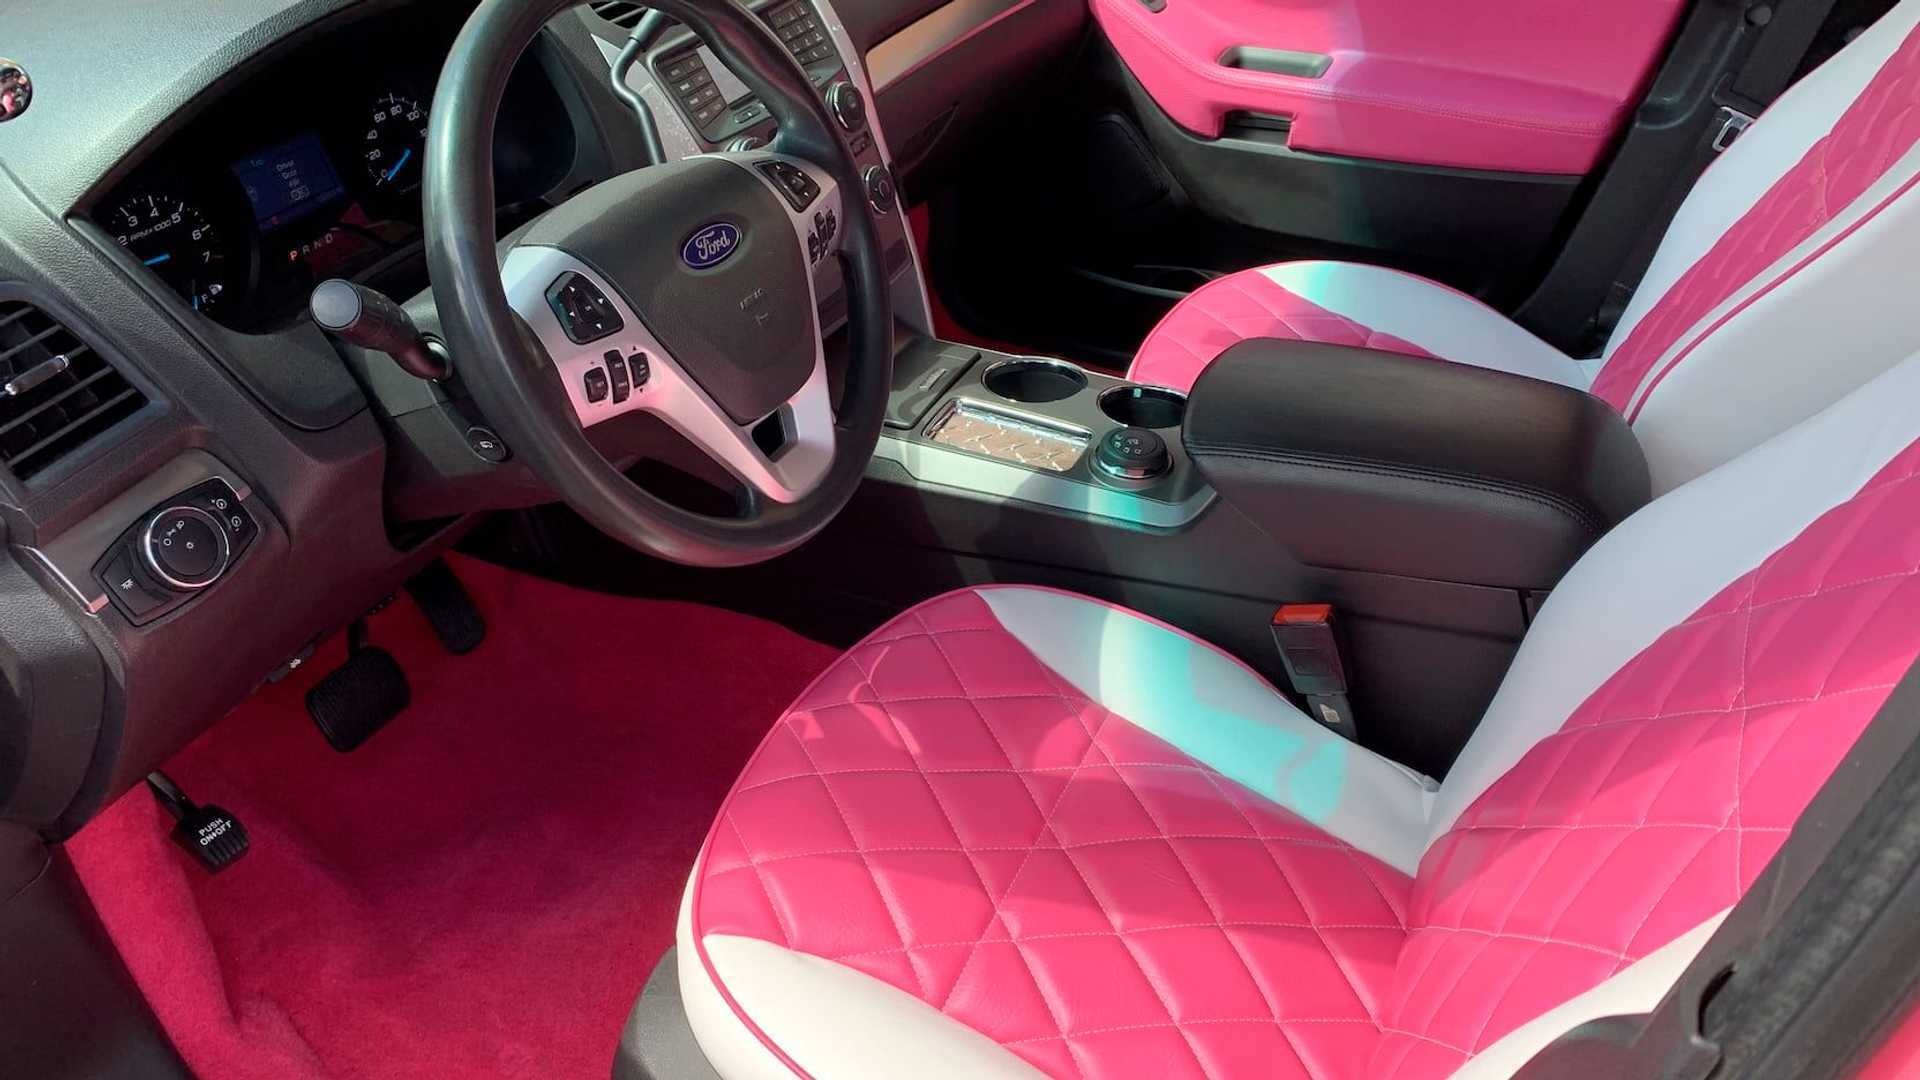 Салон рожевого "поліцейського" авто